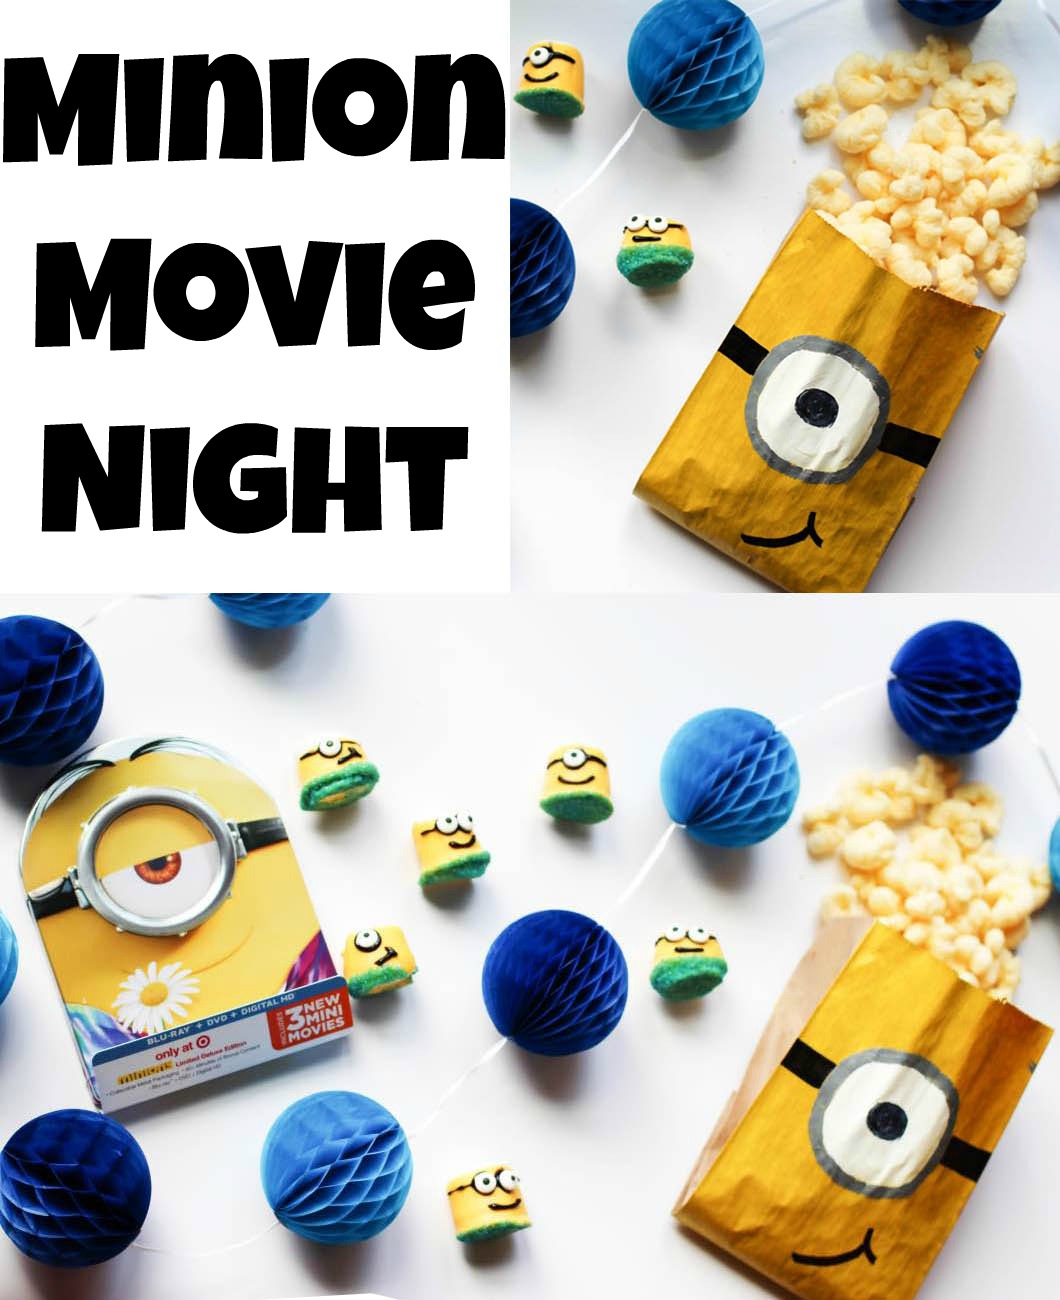 Minion Movie Night